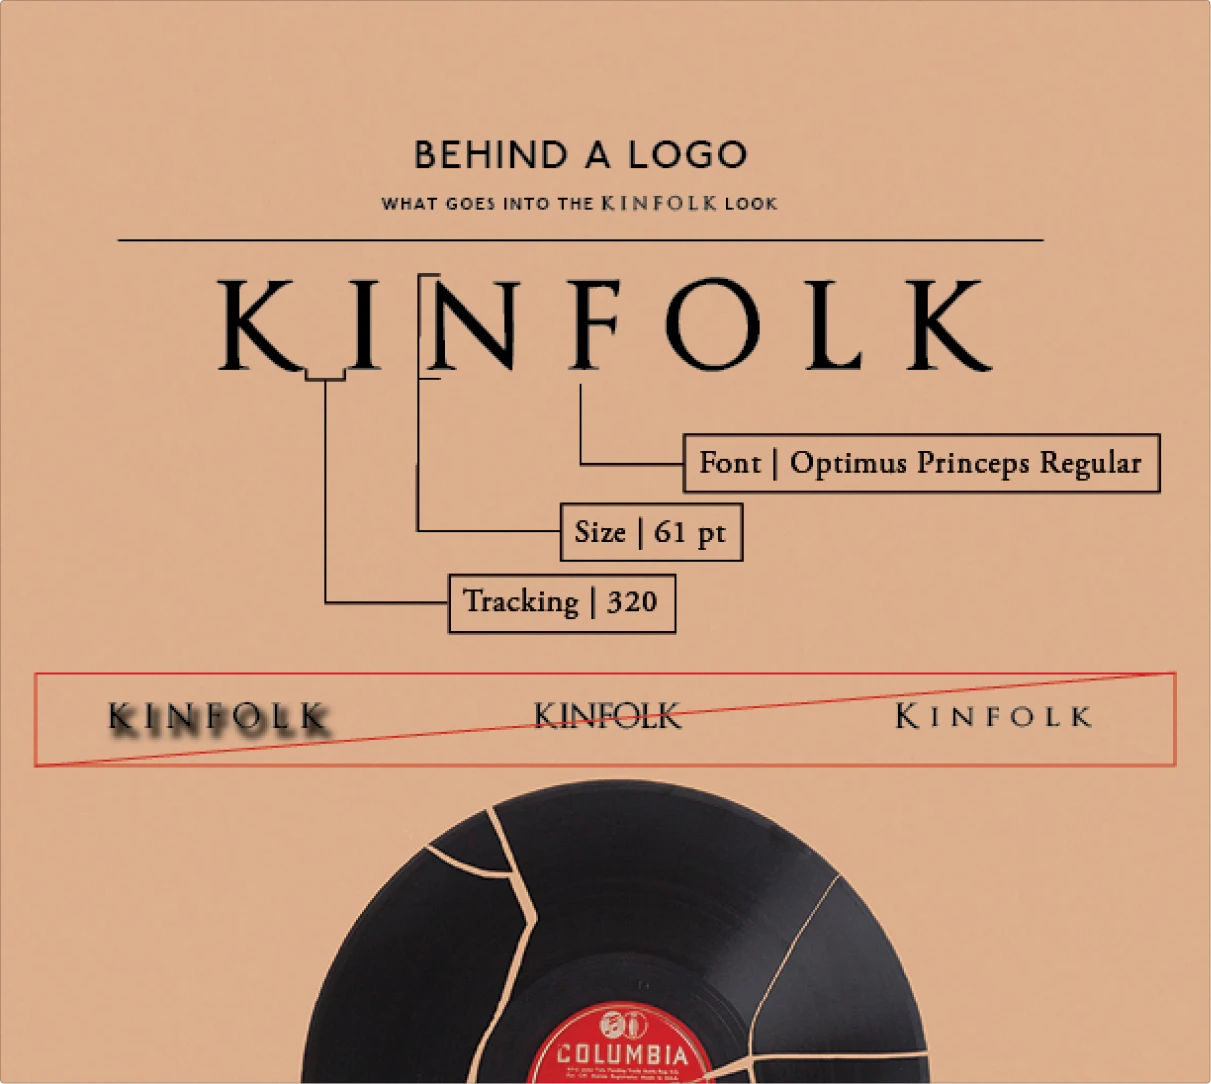 Kinfolk branding guide